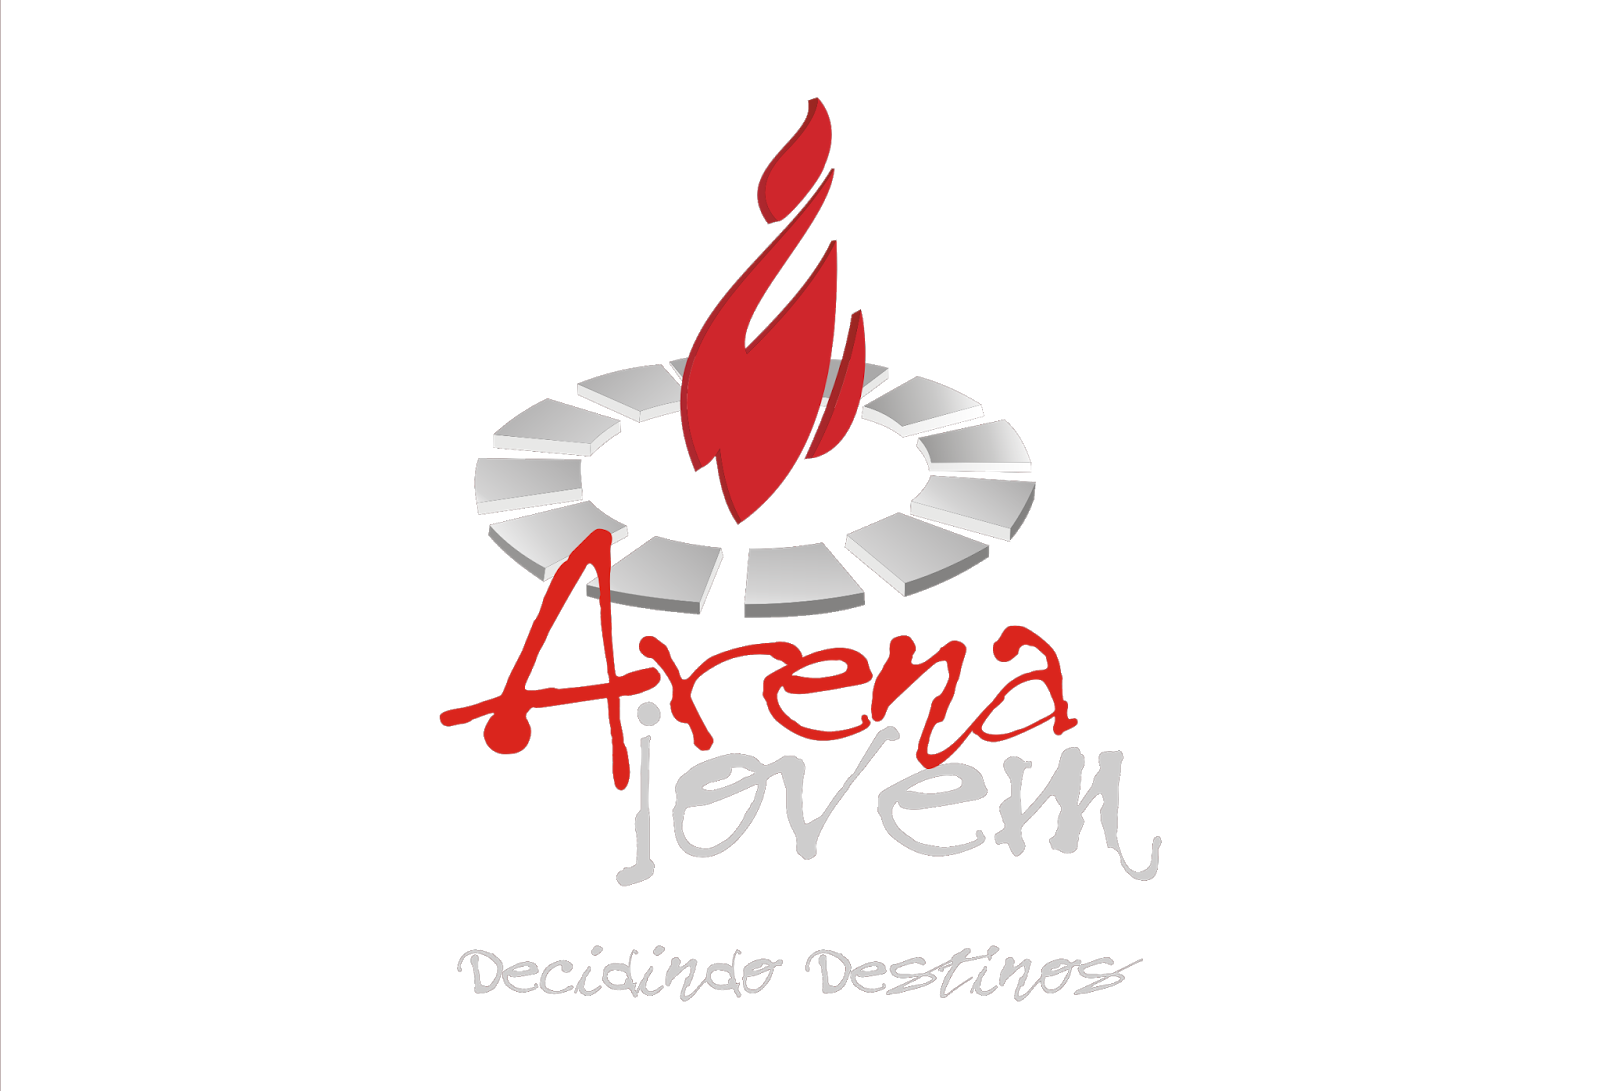 Arena Country Logo Vector